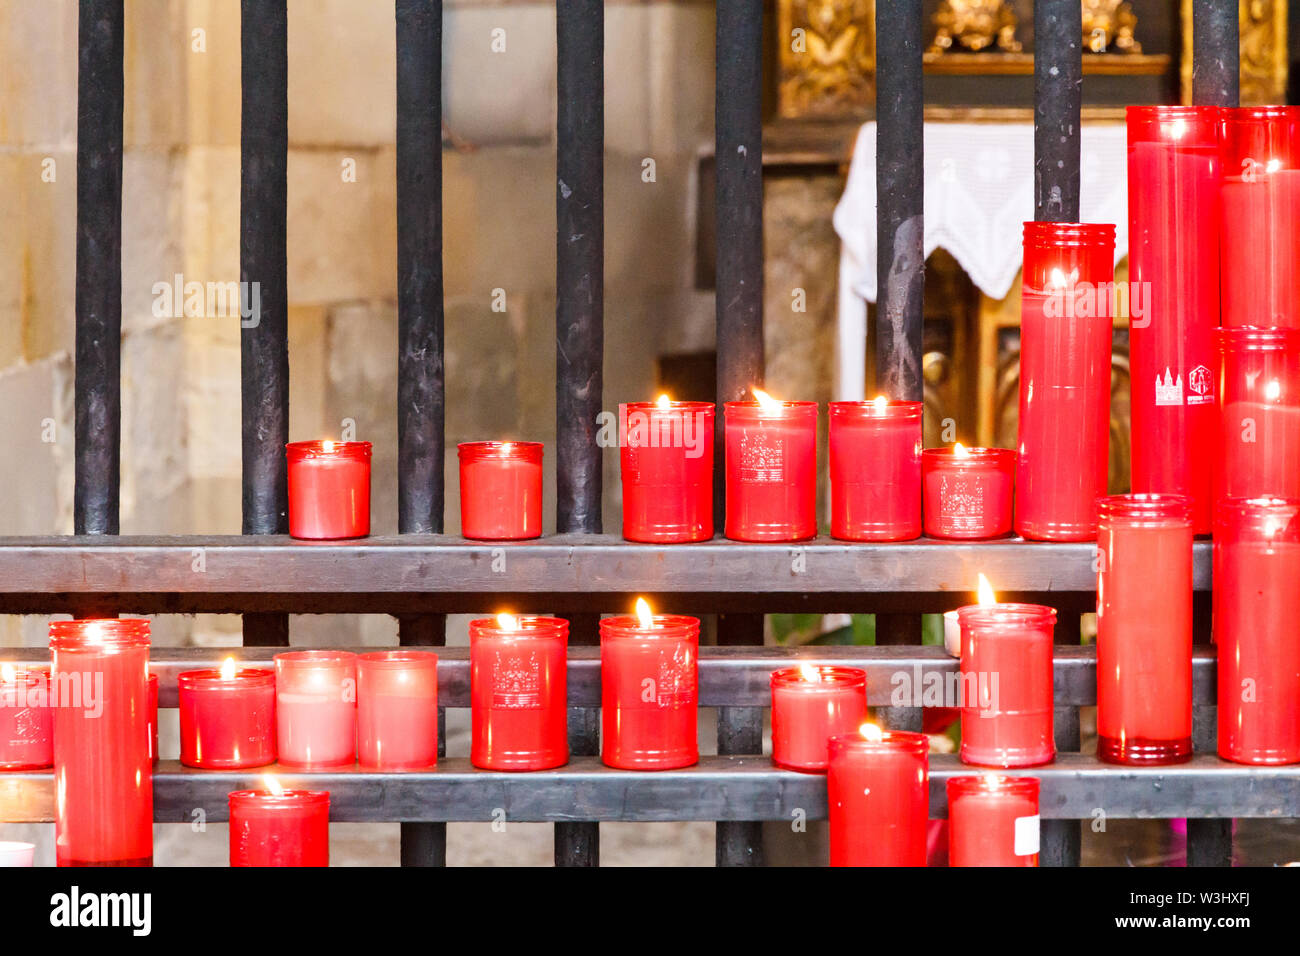 Des bougies allumées par les fidèles à l'extérieur de la cathédrale, Barcelone, Espagne Banque D'Images